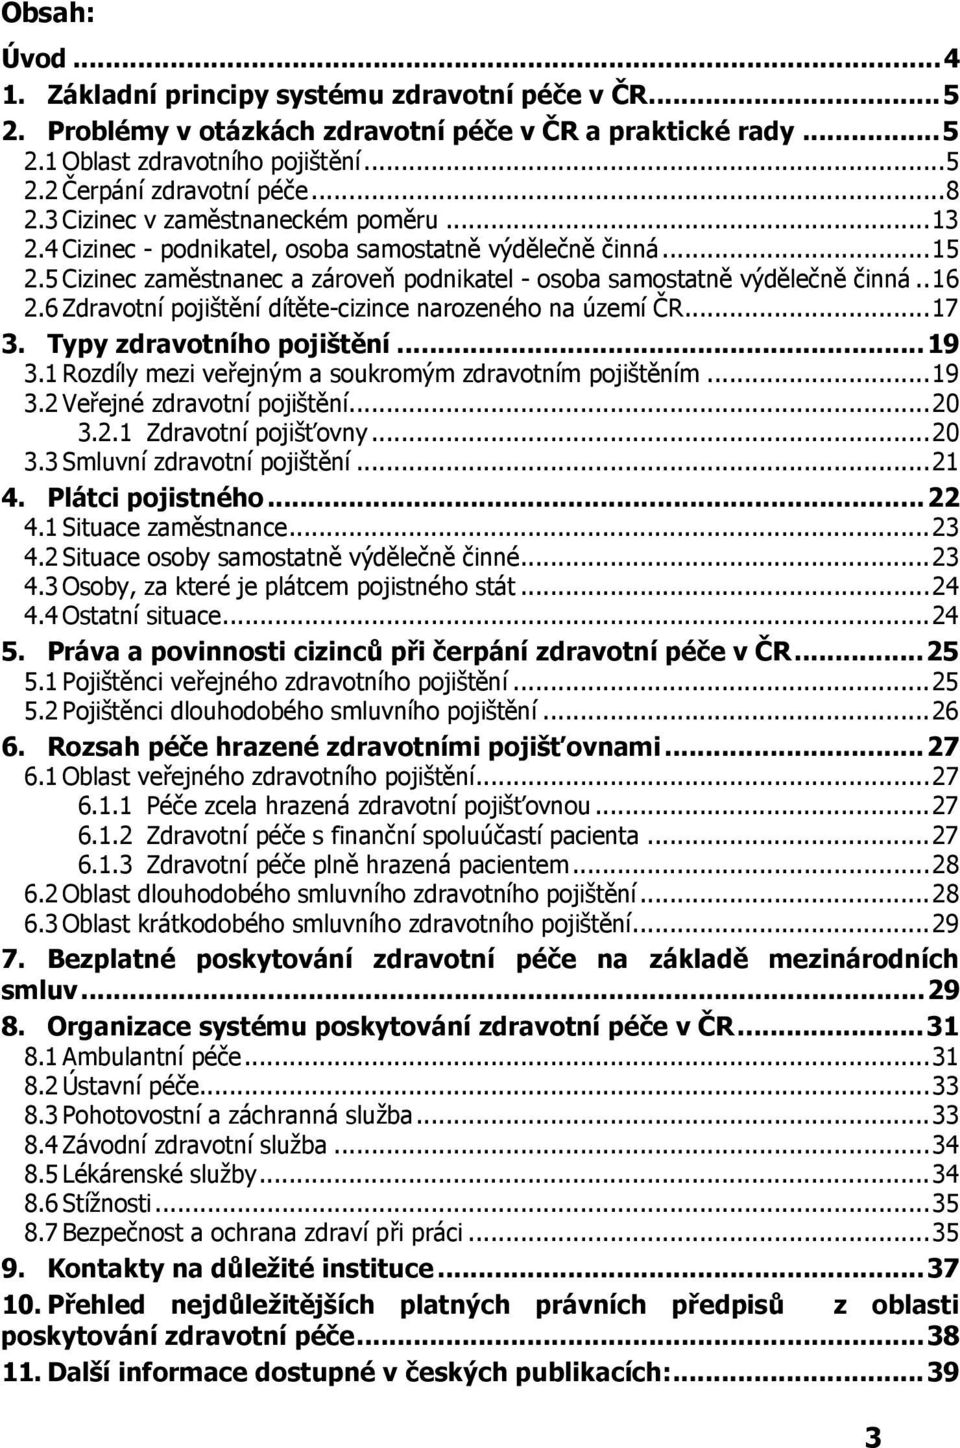 6 Zdravotní pojištění dítěte-cizince narozeného na území ČR...17 3. Typy zdravotního pojištění...19 3.1 Rozdíly mezi veřejným a soukromým zdravotním pojištěním...19 3.2 Veřejné zdravotní pojištění.